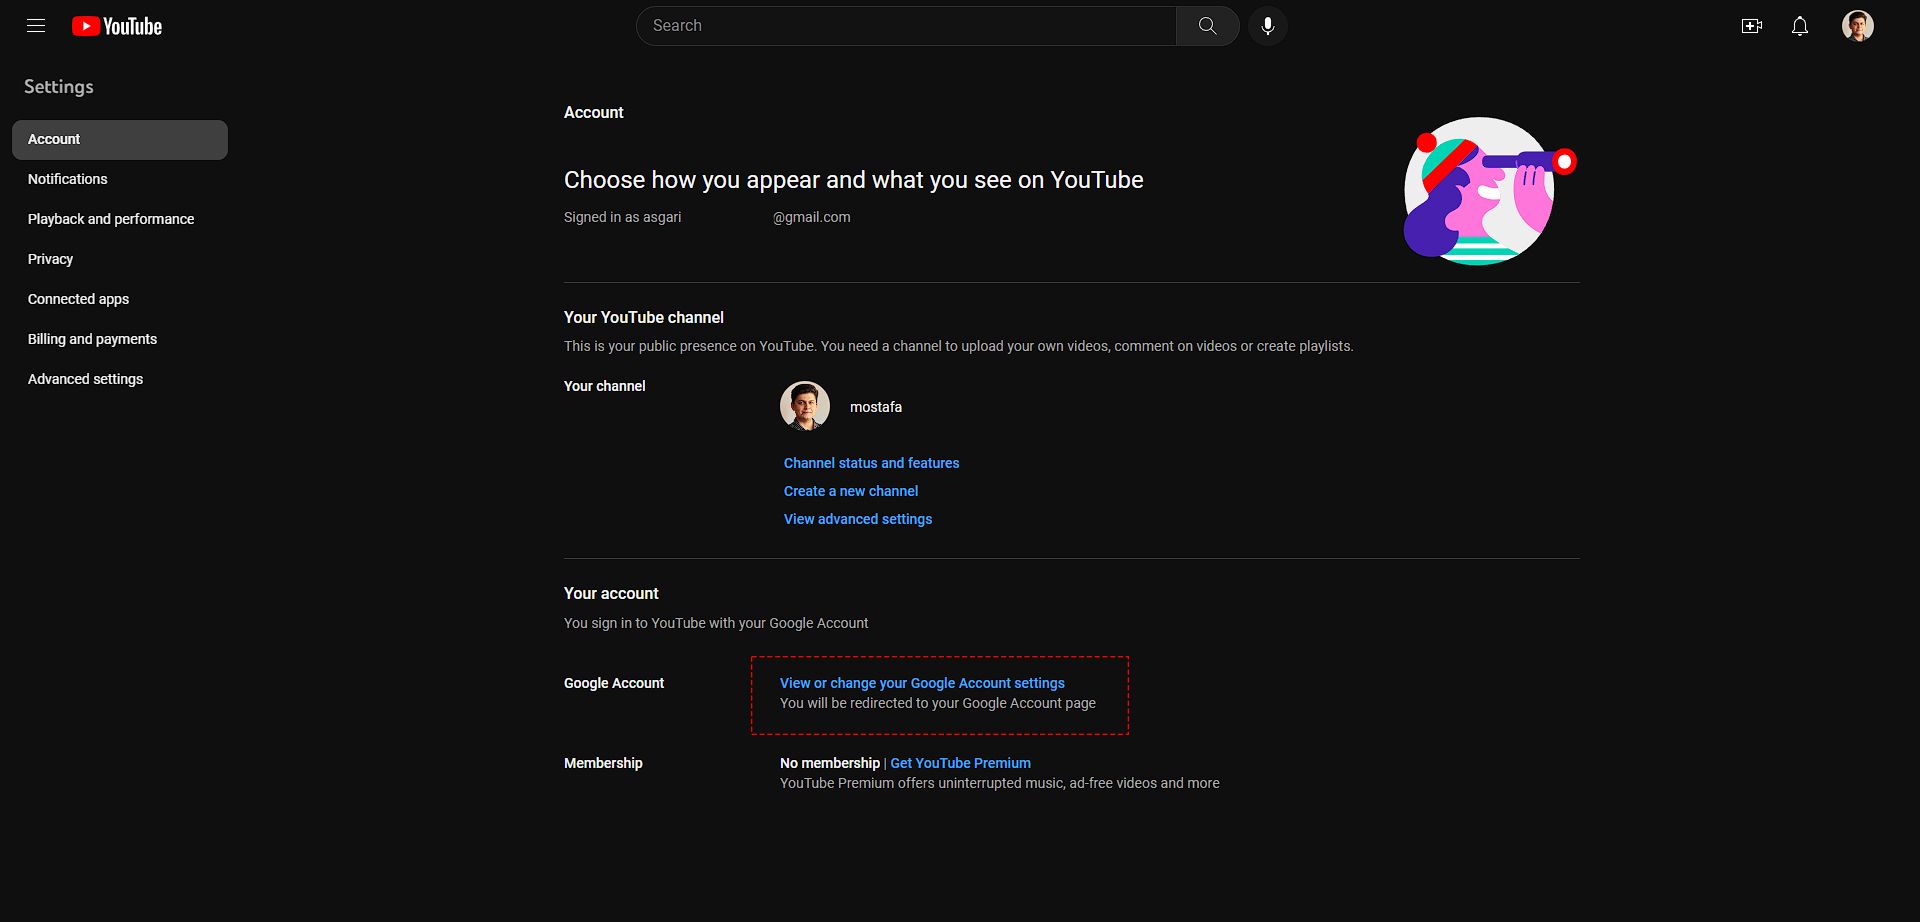 صفحه تنظیمات امنیتی یوتیوب که گزینه های مختلفی در آن دیده می شود